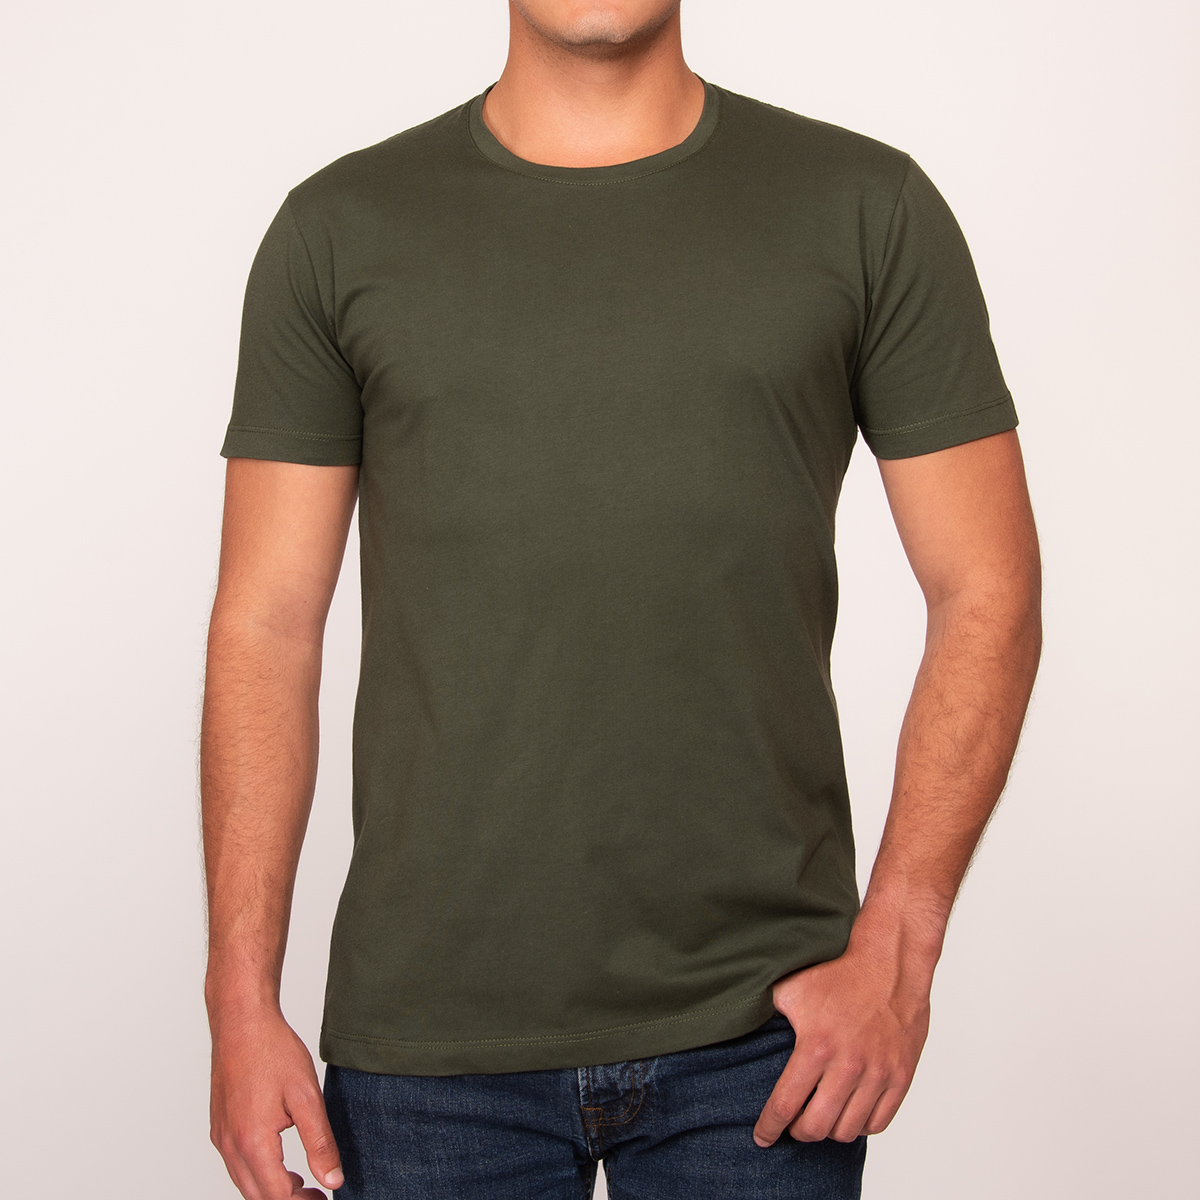 Camiseta manga corta verde militar para hombre modelo Maneras de vivir